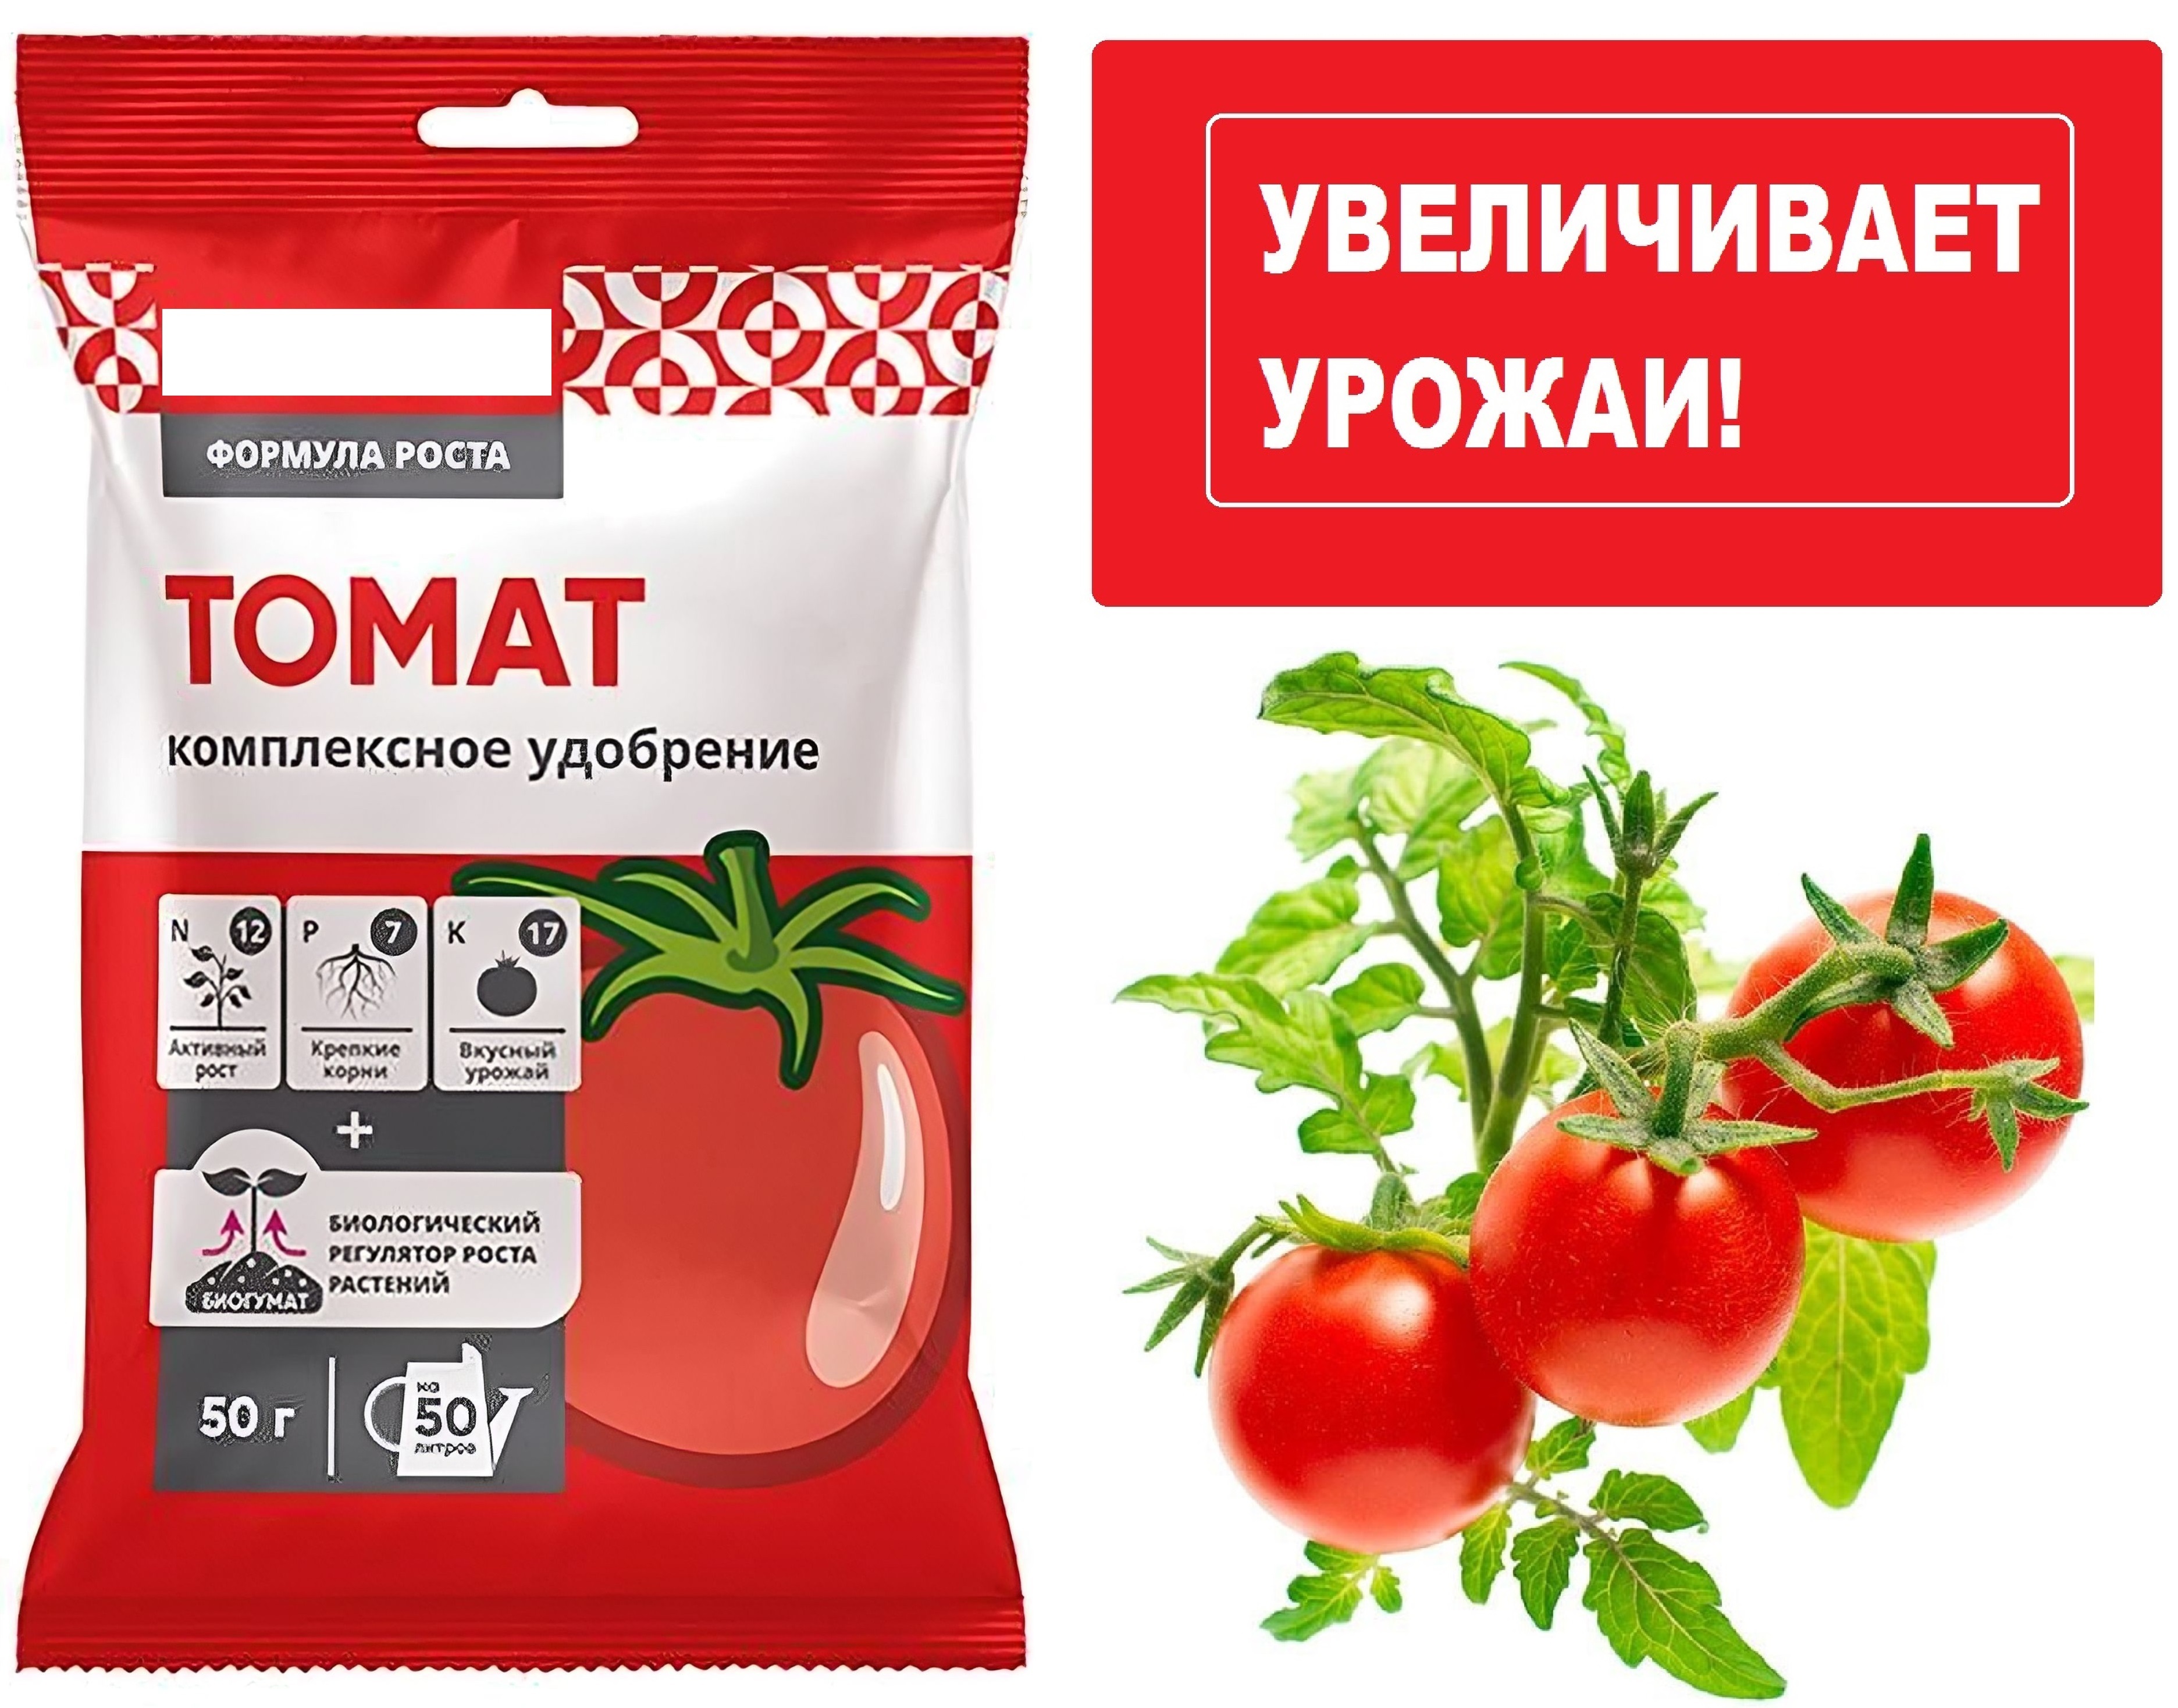 Подкормка томатов суперфосфатом